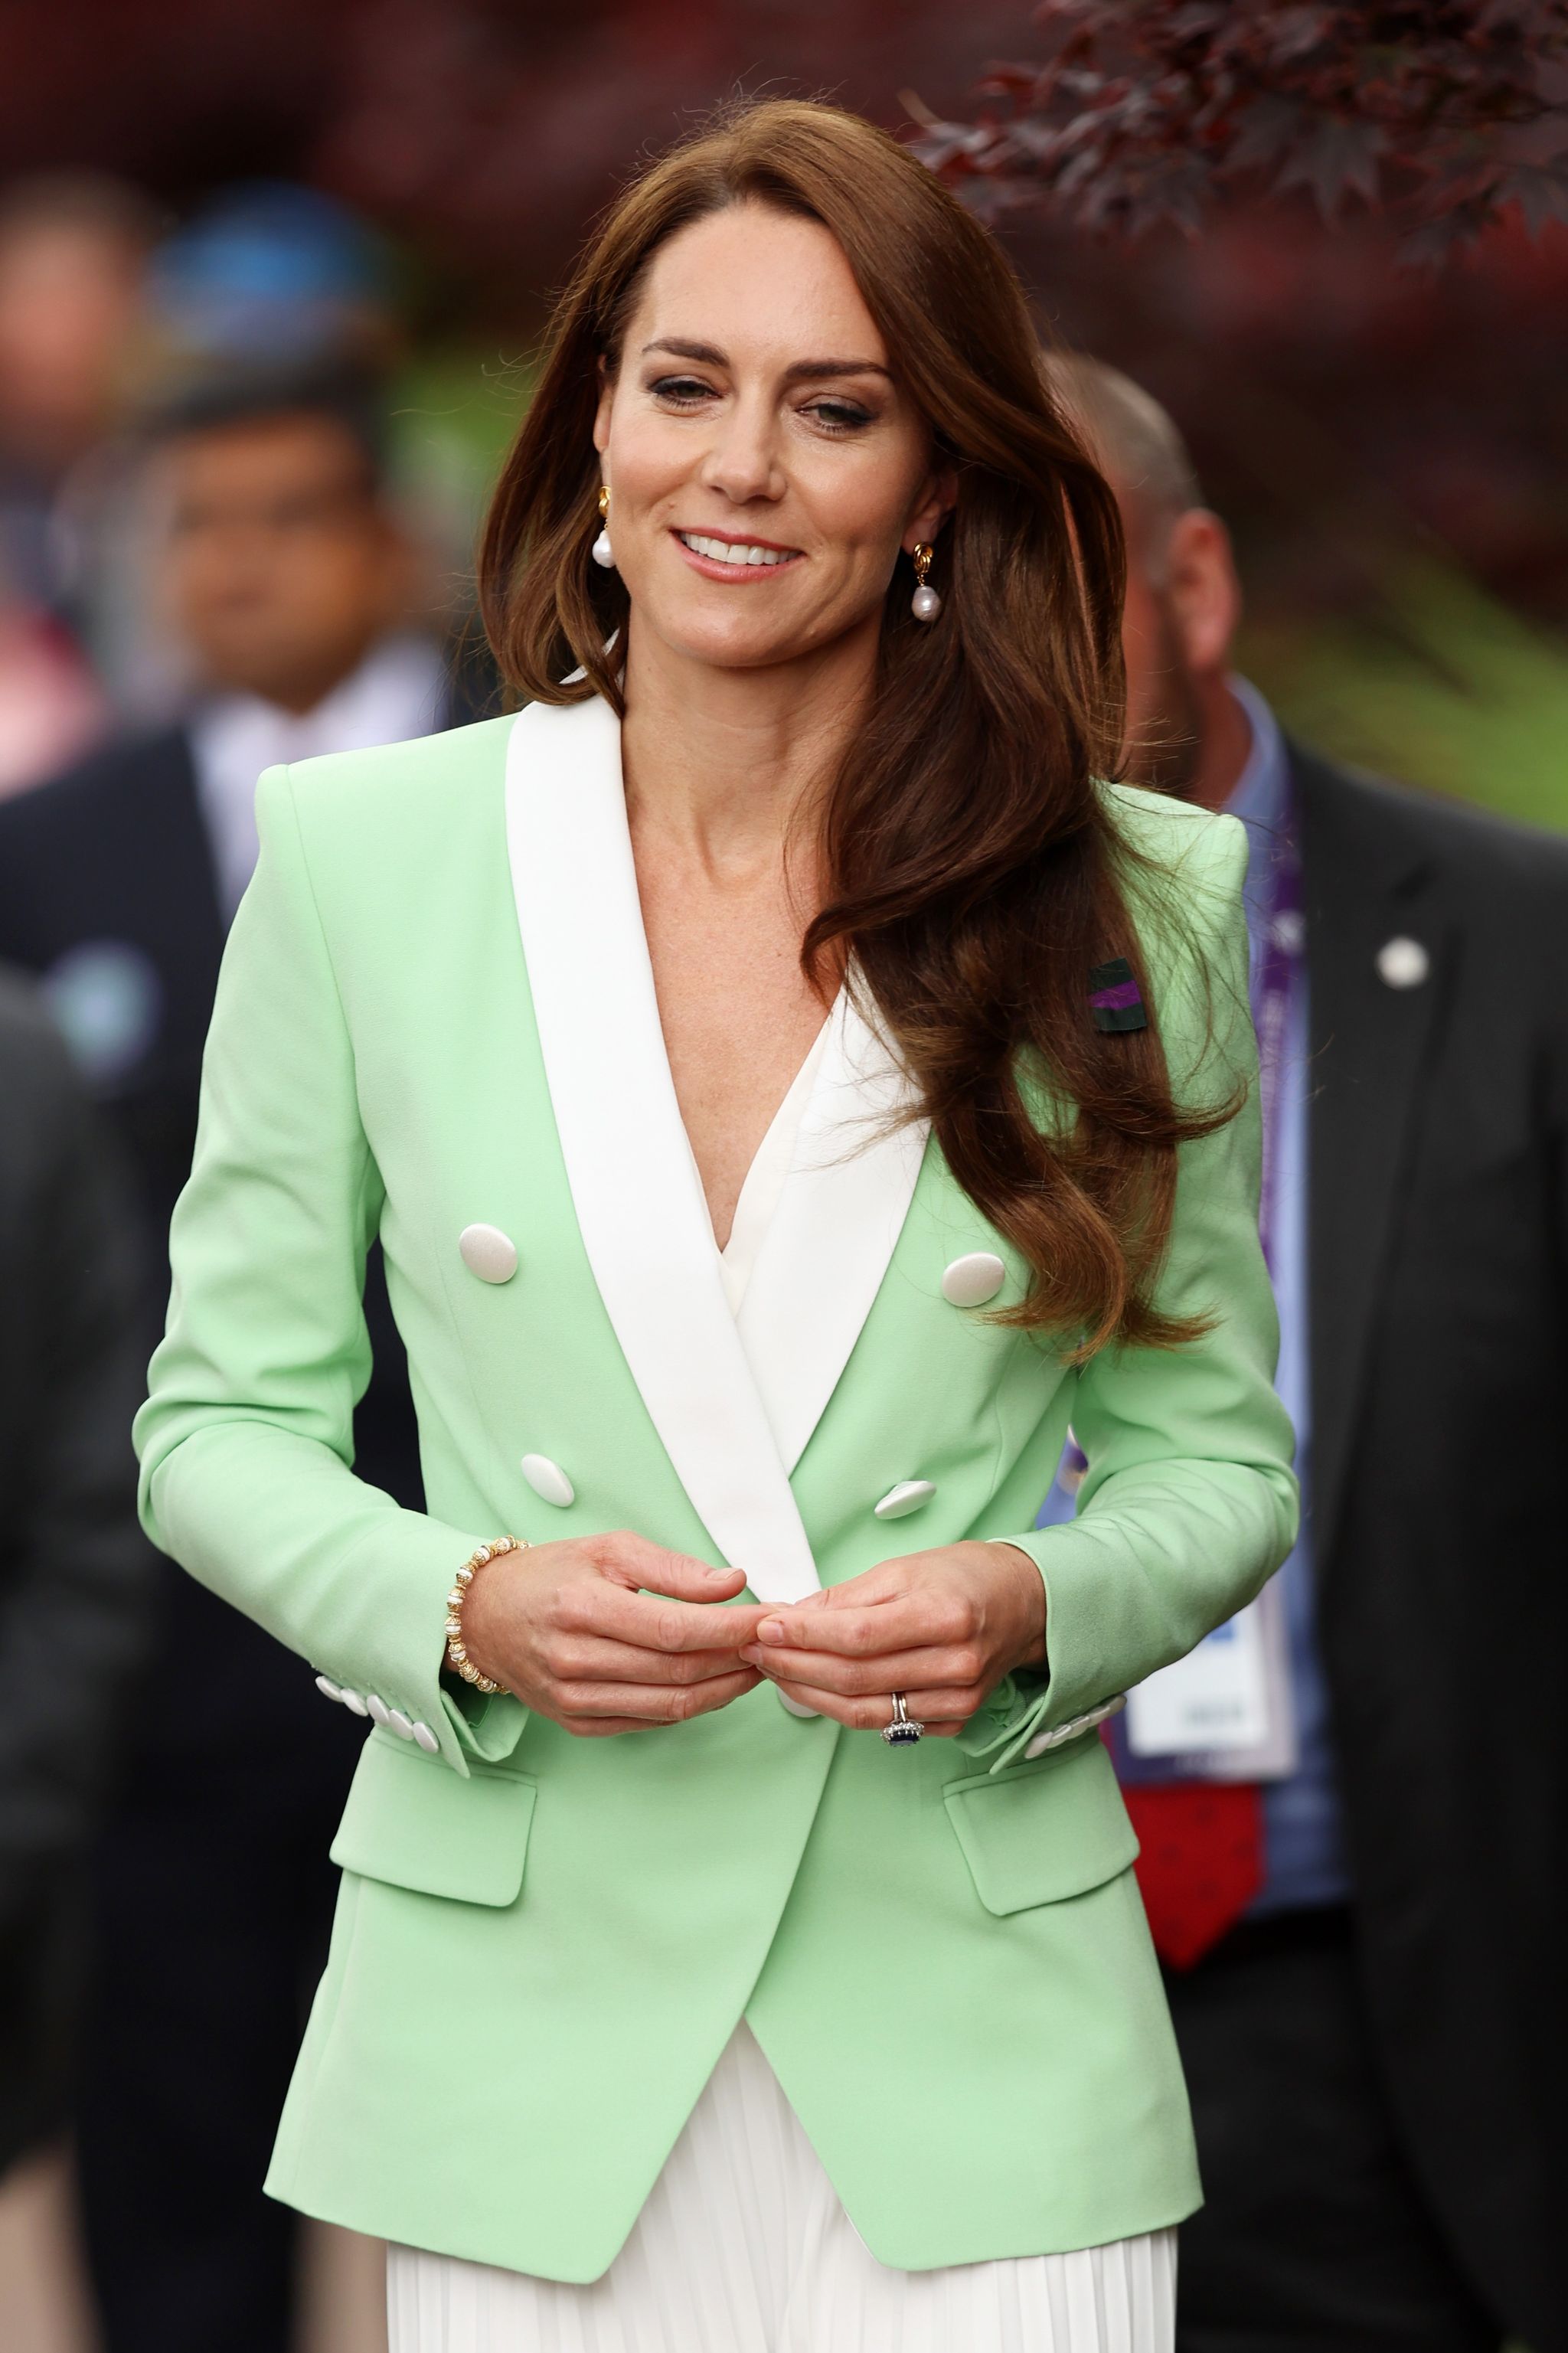 Kate Middleton usa blazer menta em manhã no Torneio de Wimbledon